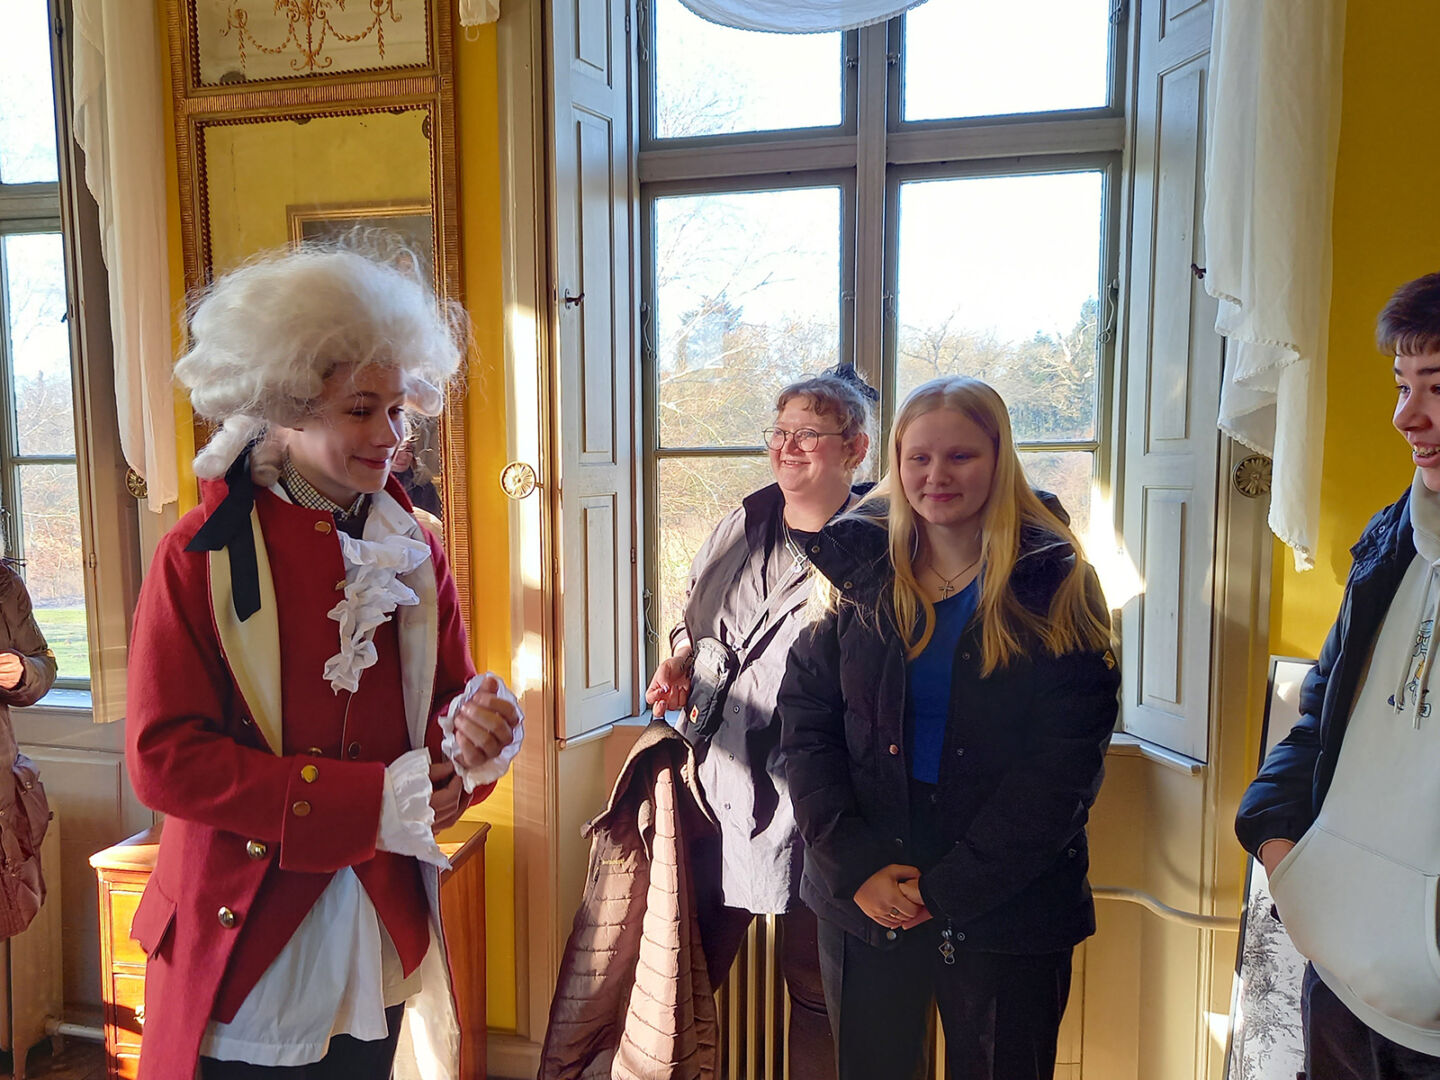 Unge på besøg på Reventlow-Museet Pederstrup hvor de møder personer i datidens dragt.